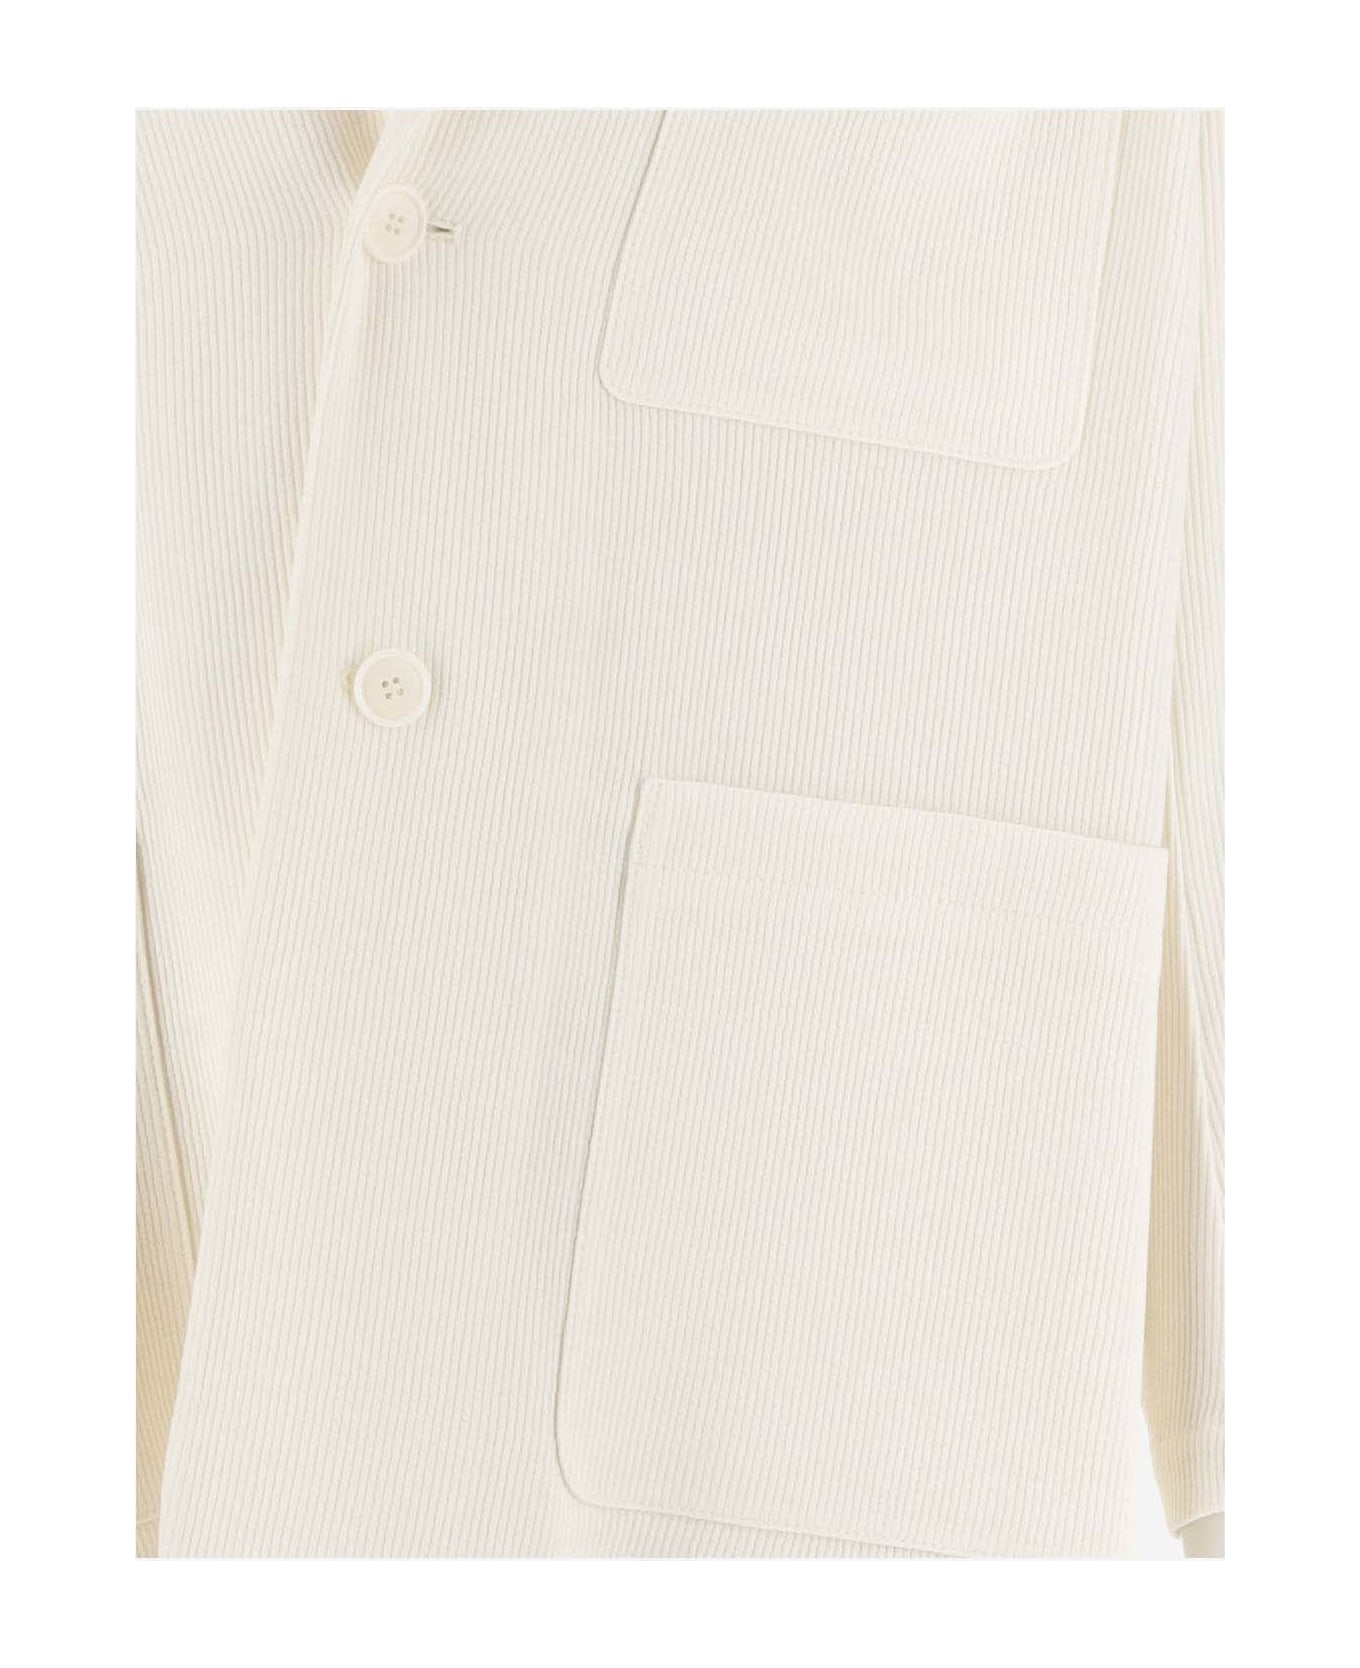 Giorgio Armani Single-buttoned Blazer - White ブレザー